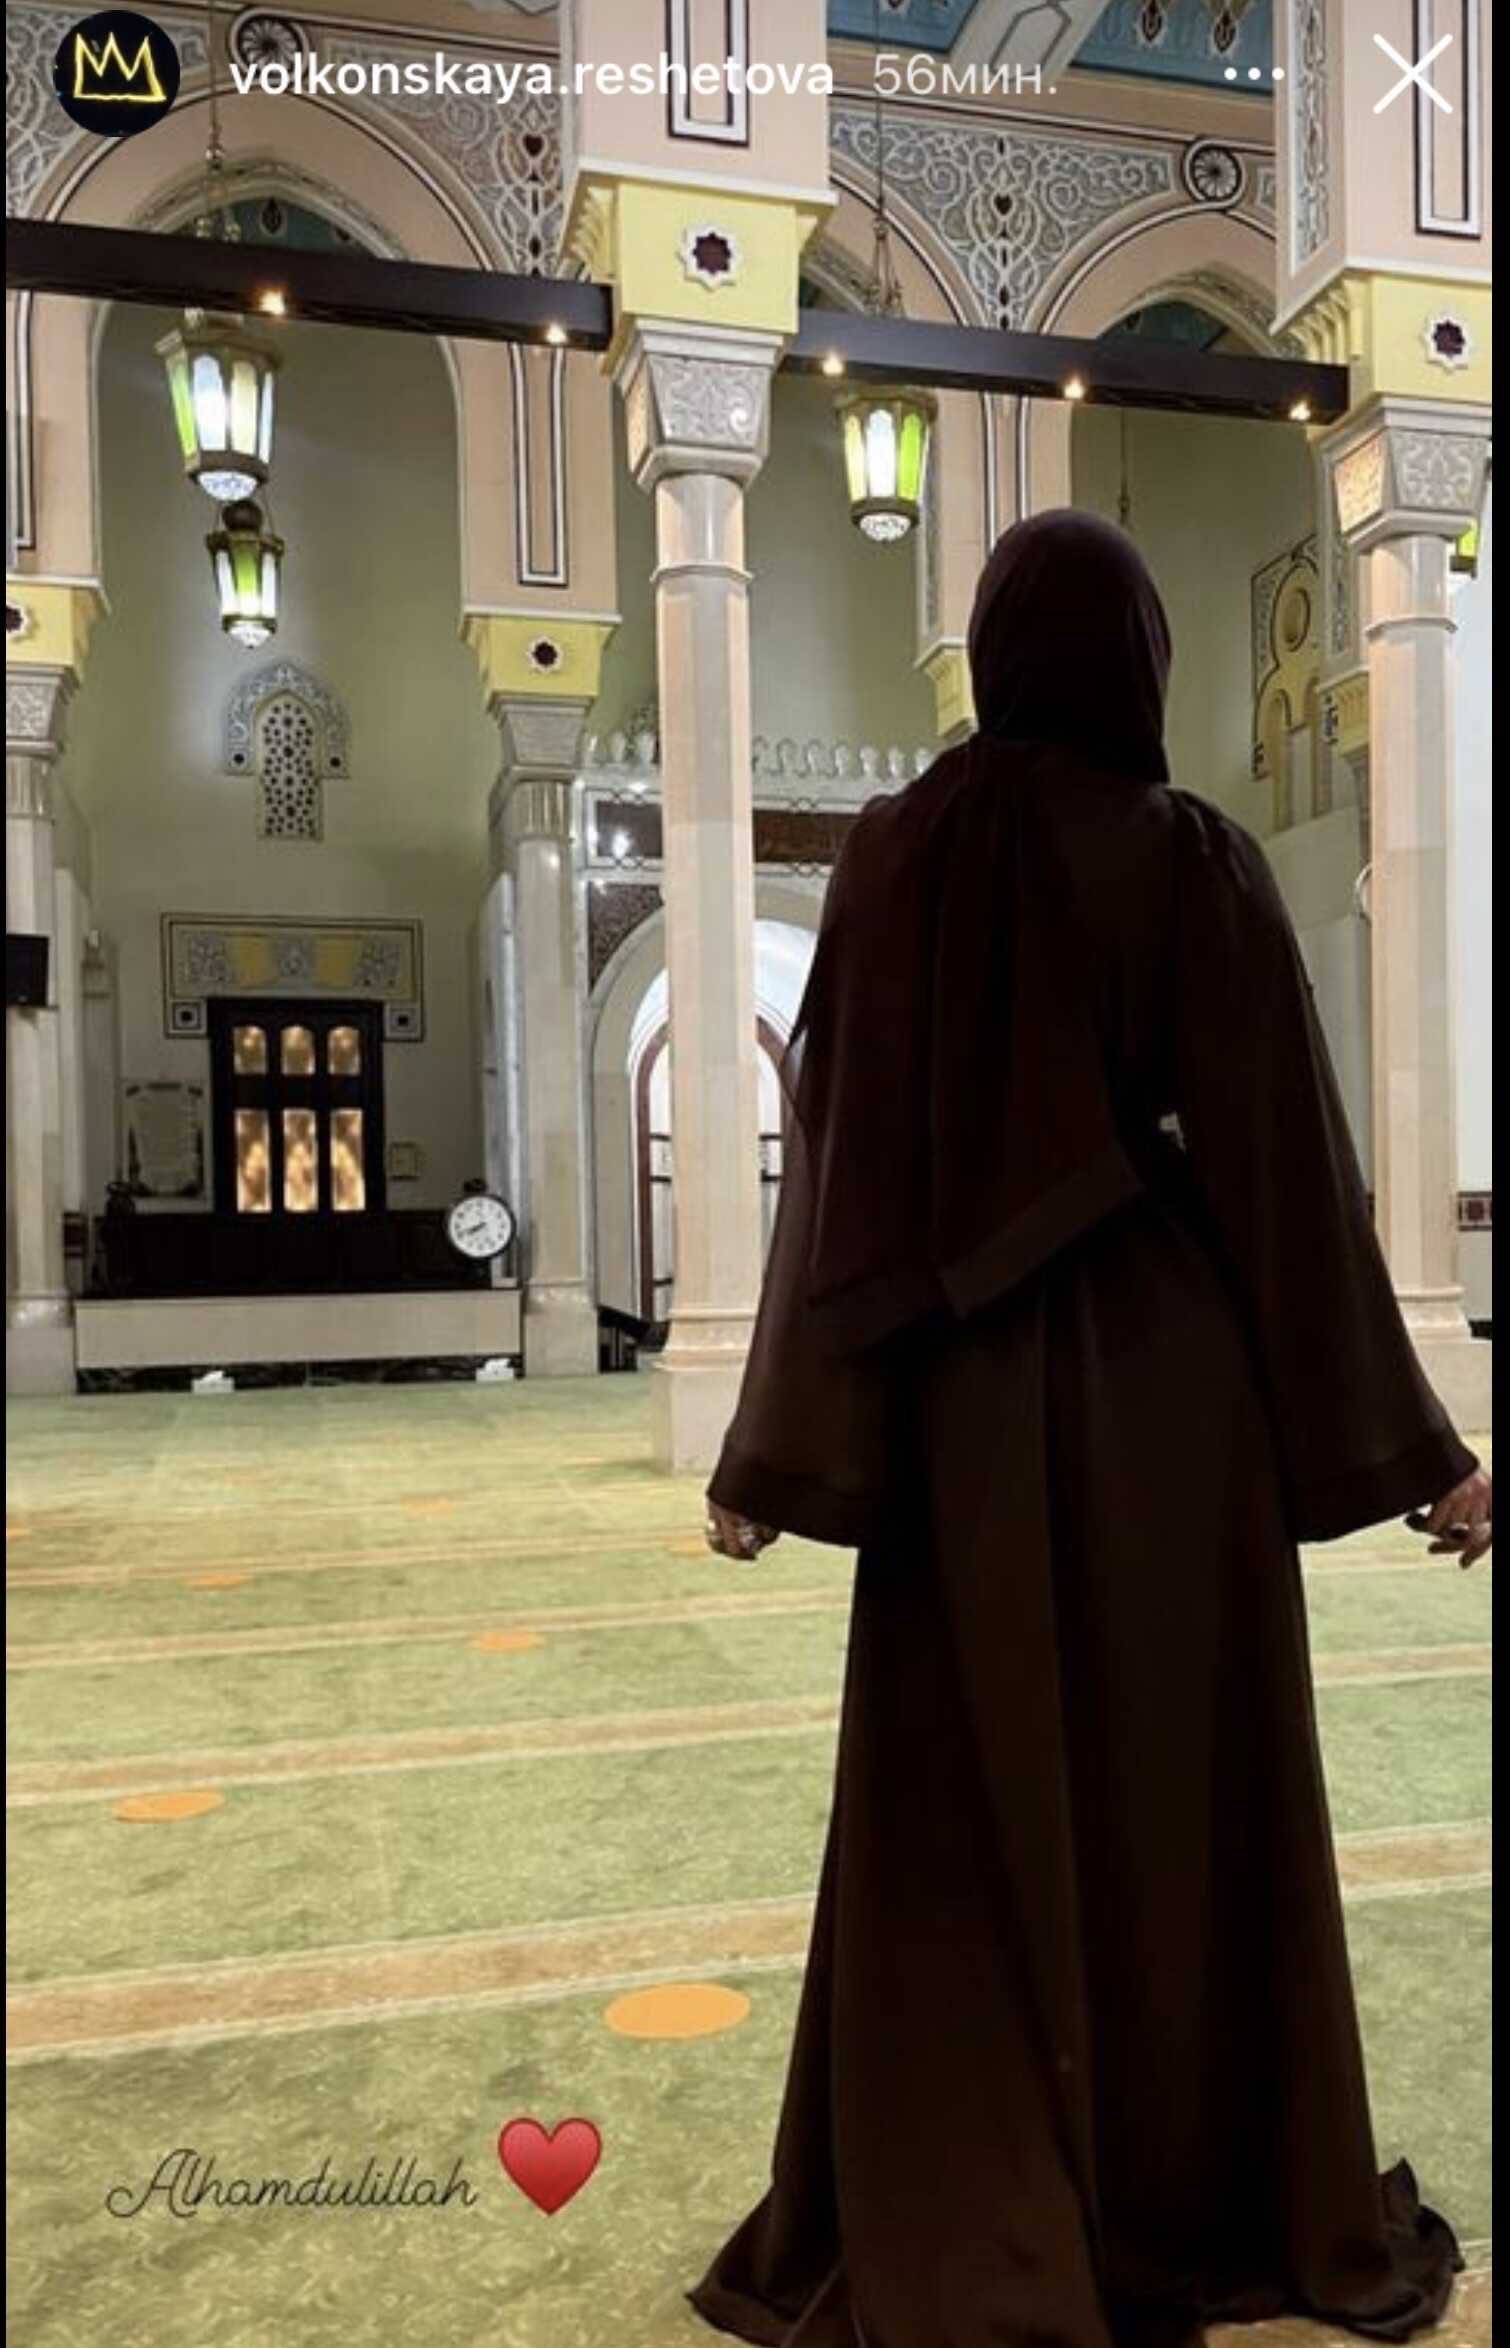 Анастасия Решетова в мусульманской одежде пришла в мечеть